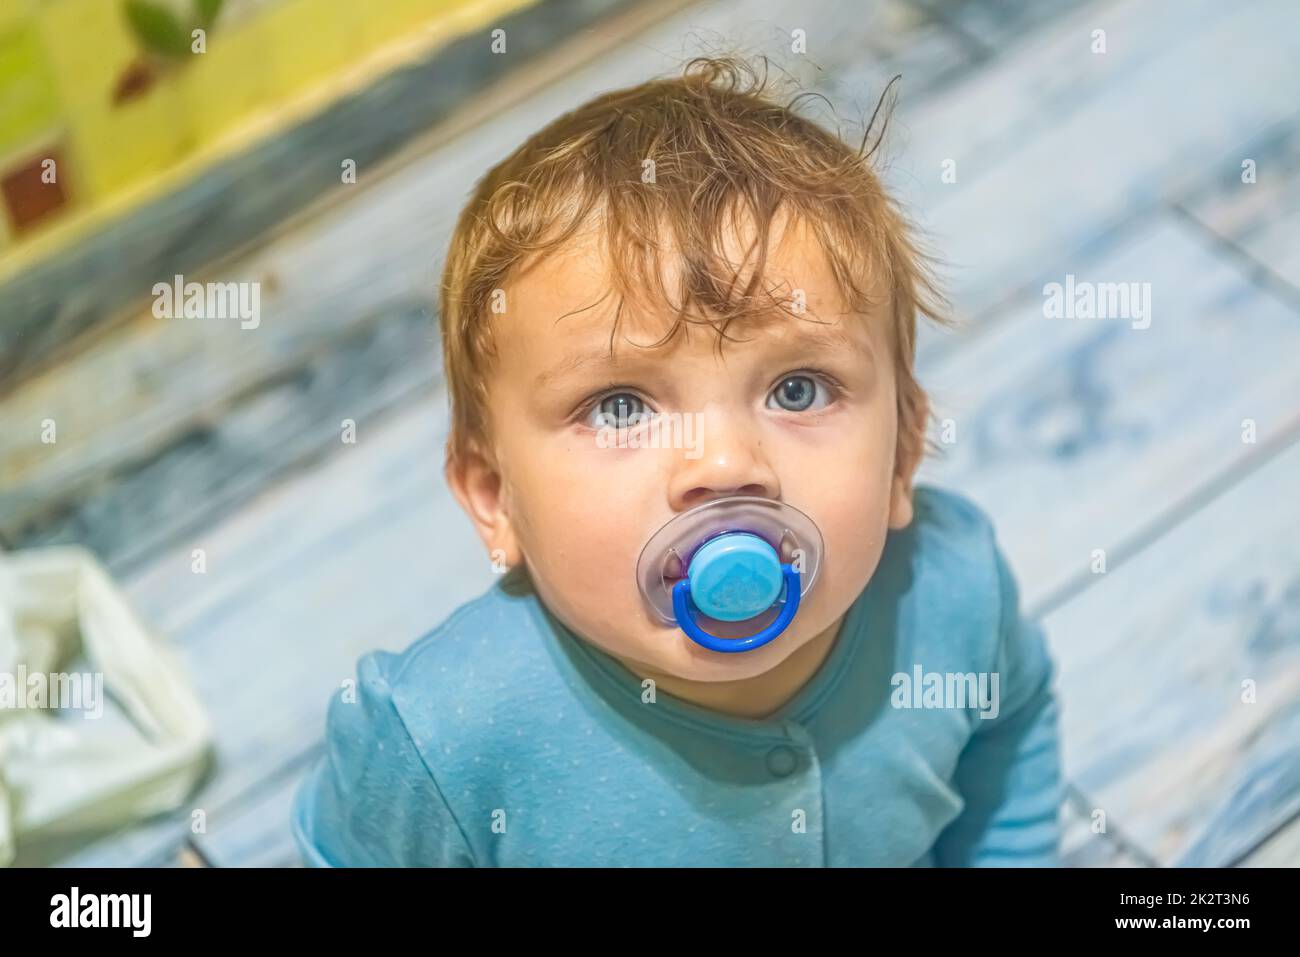 il bambino bianco con gli occhi blu con un succhietto in bocca guarda verso l'alto Foto Stock